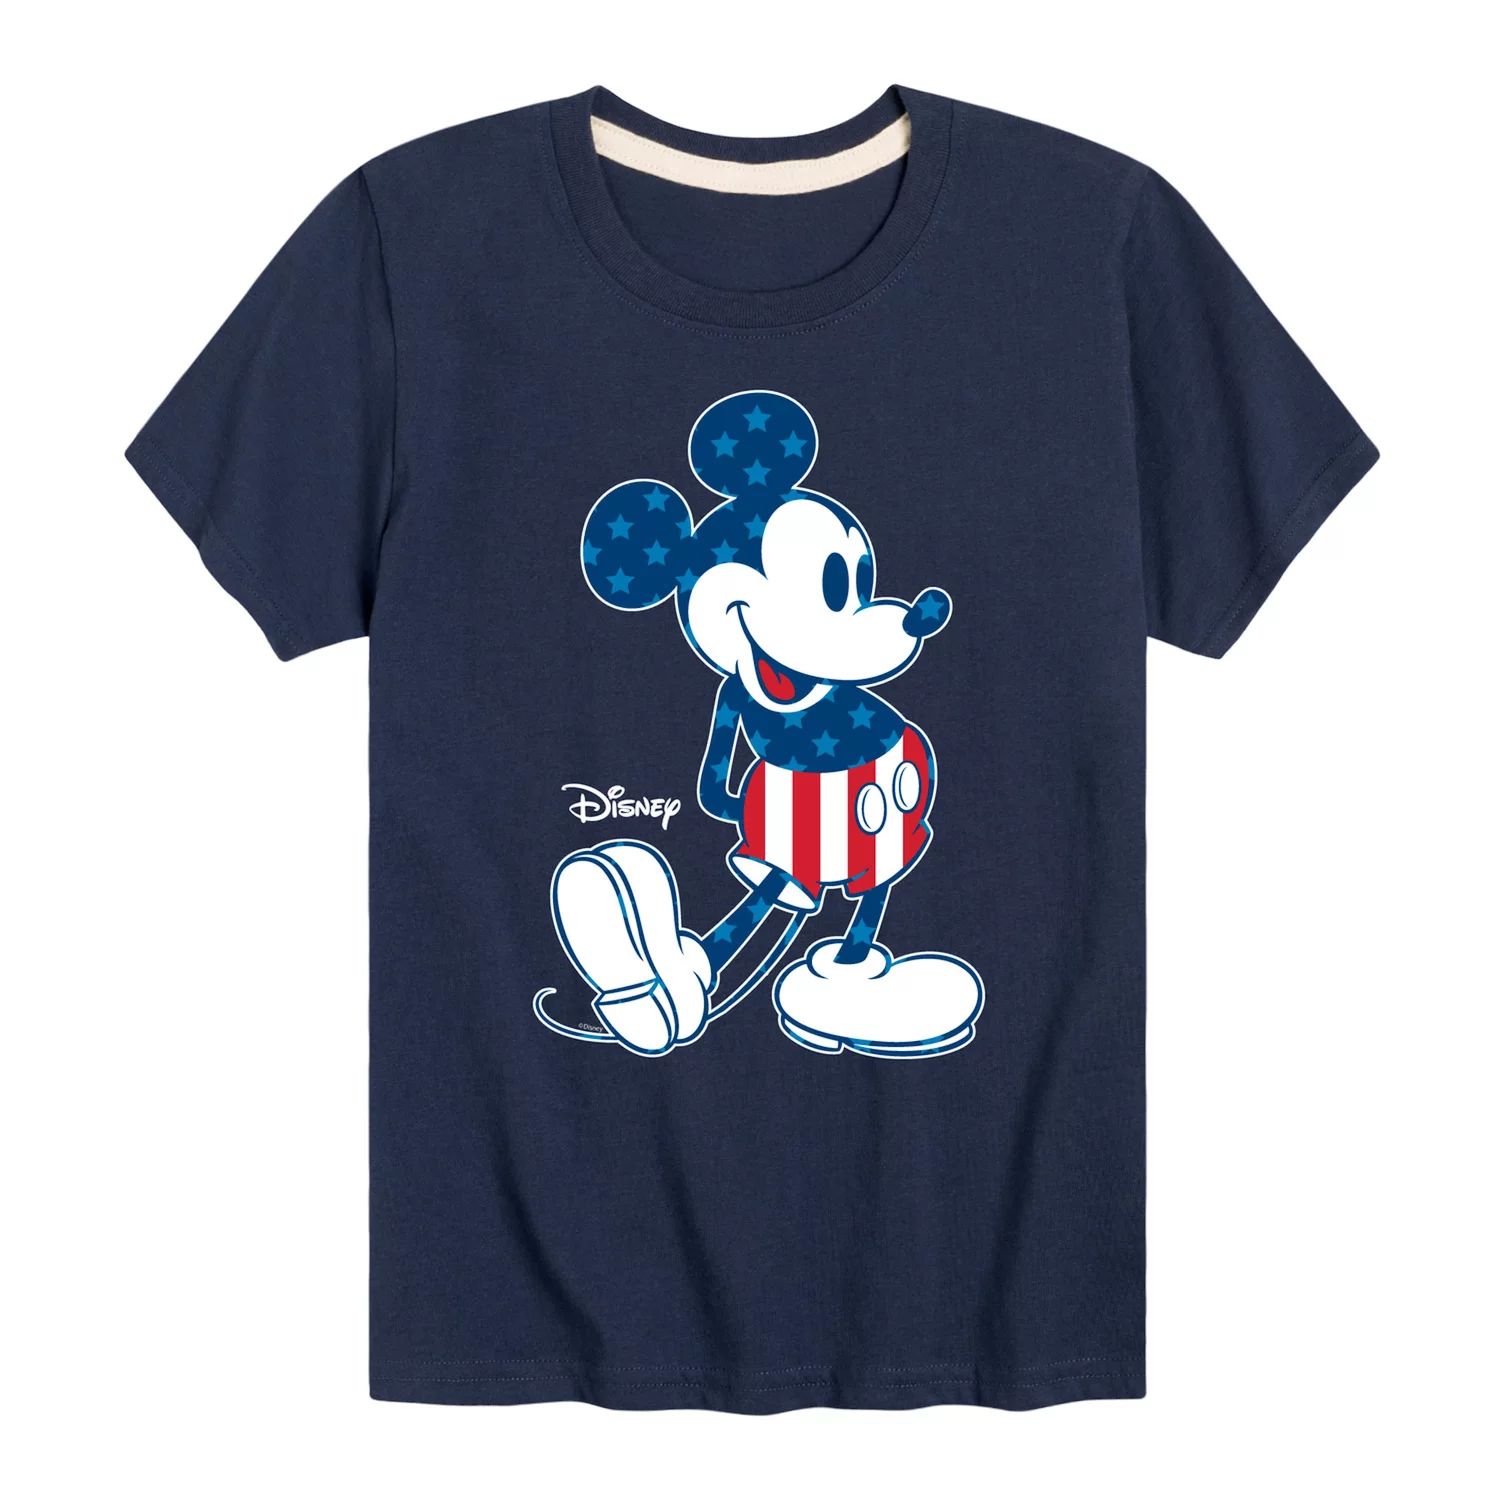 Футболка Disney с Микки Маусом для мальчиков 8–20 лет с рисунком флага и графическим рисунком Disney базовая футболка disney с логотипом disney для мальчиков 8–20 лет и графическим рисунком disney